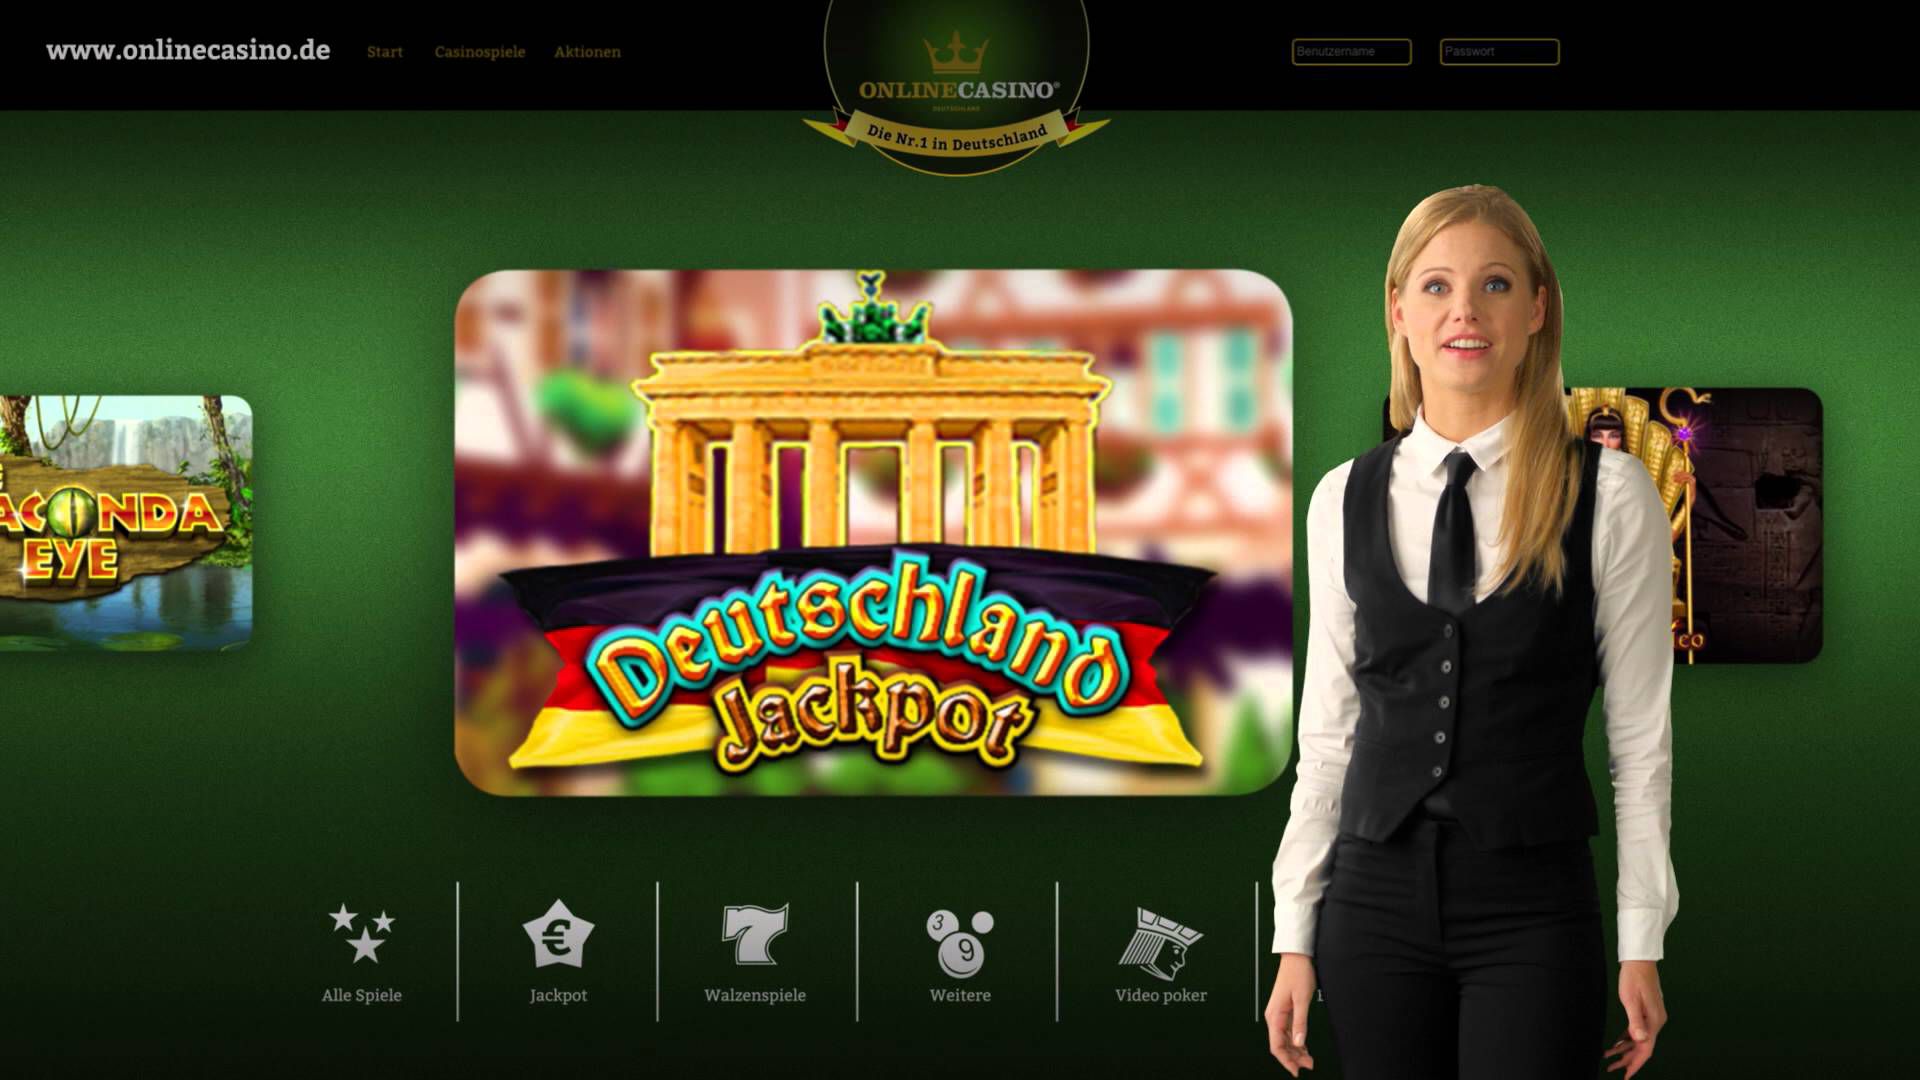 Online Casino Aus Der Werbung